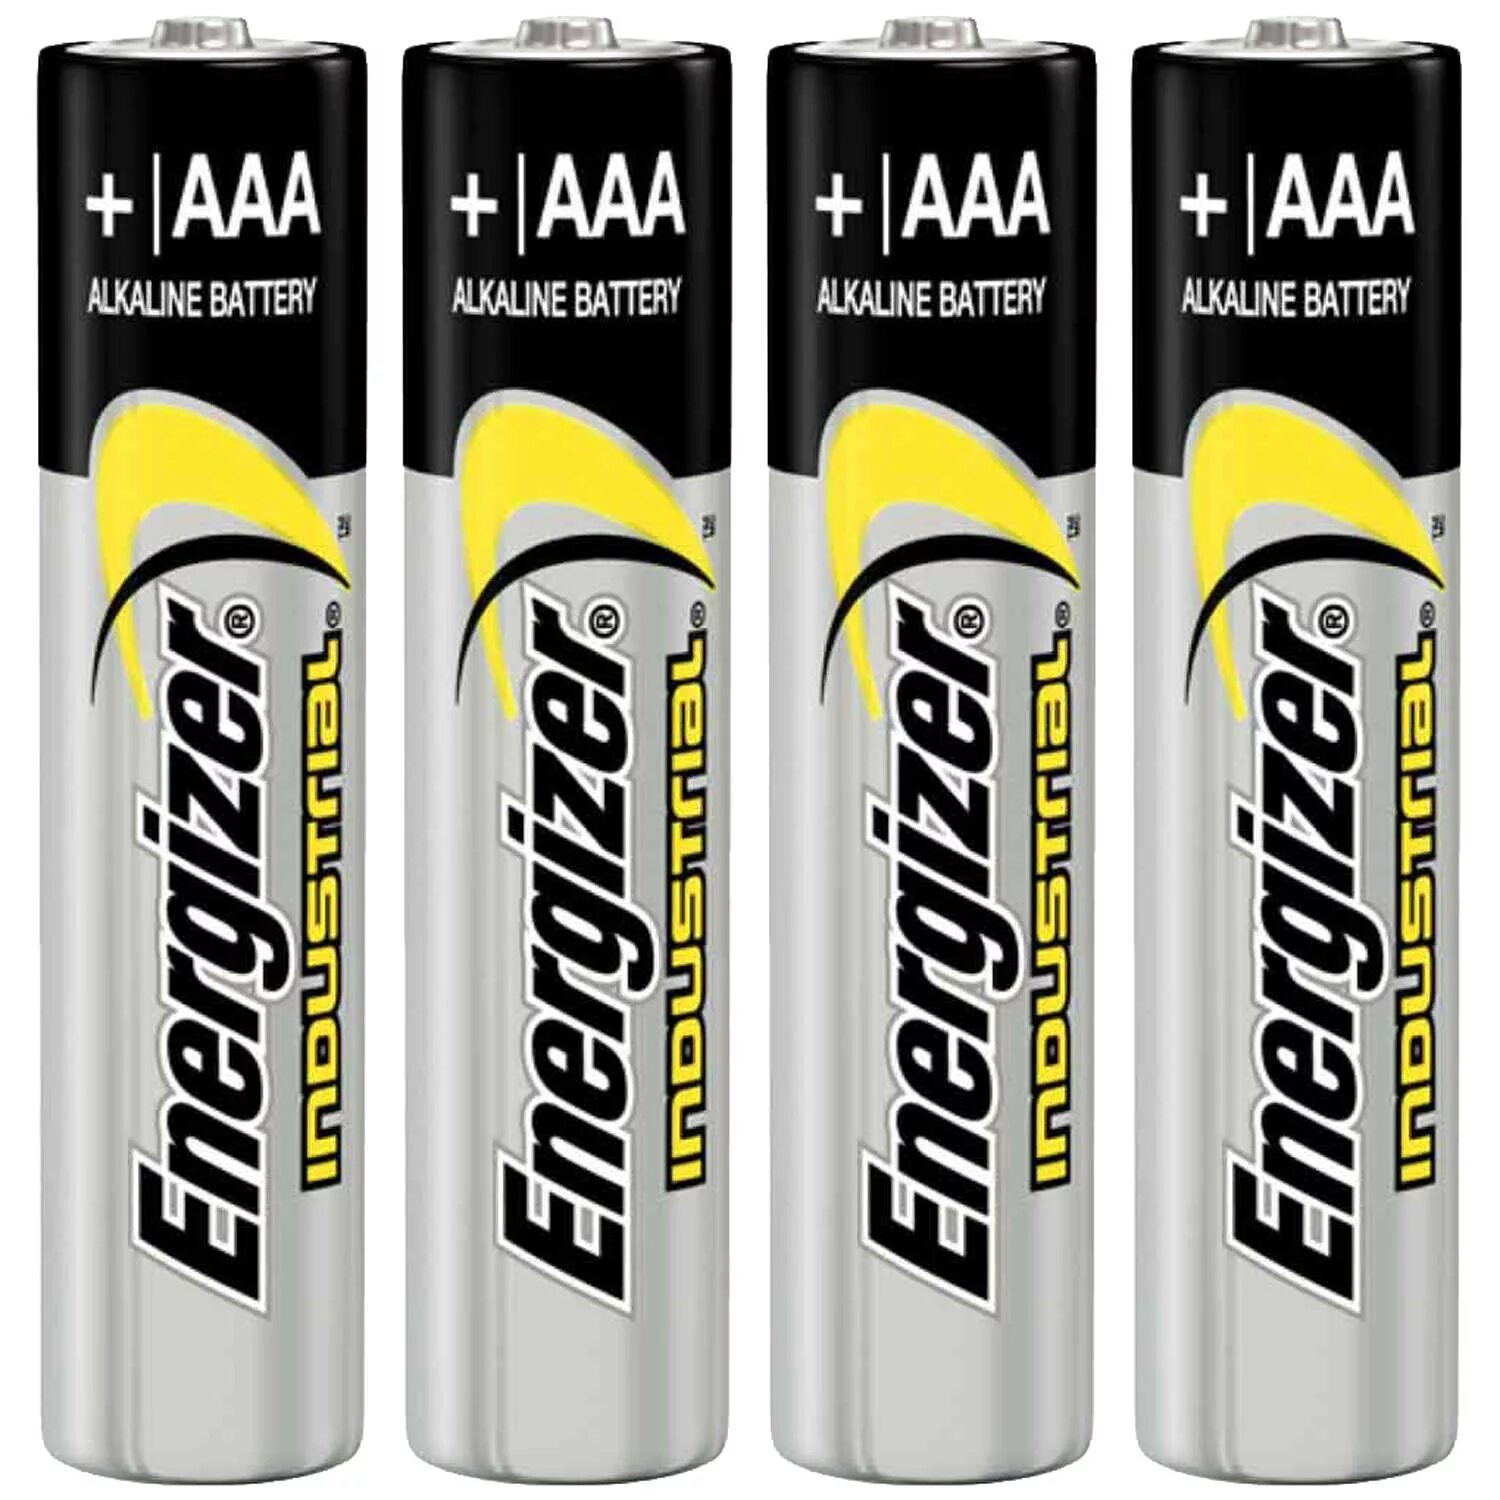 Aaa battery. Alkaline Battery Energizer. Батарейки ААА Alkaline. Pakko батарейки Alkaline. Батарейки Energizer AAA Alkaline оригинал.